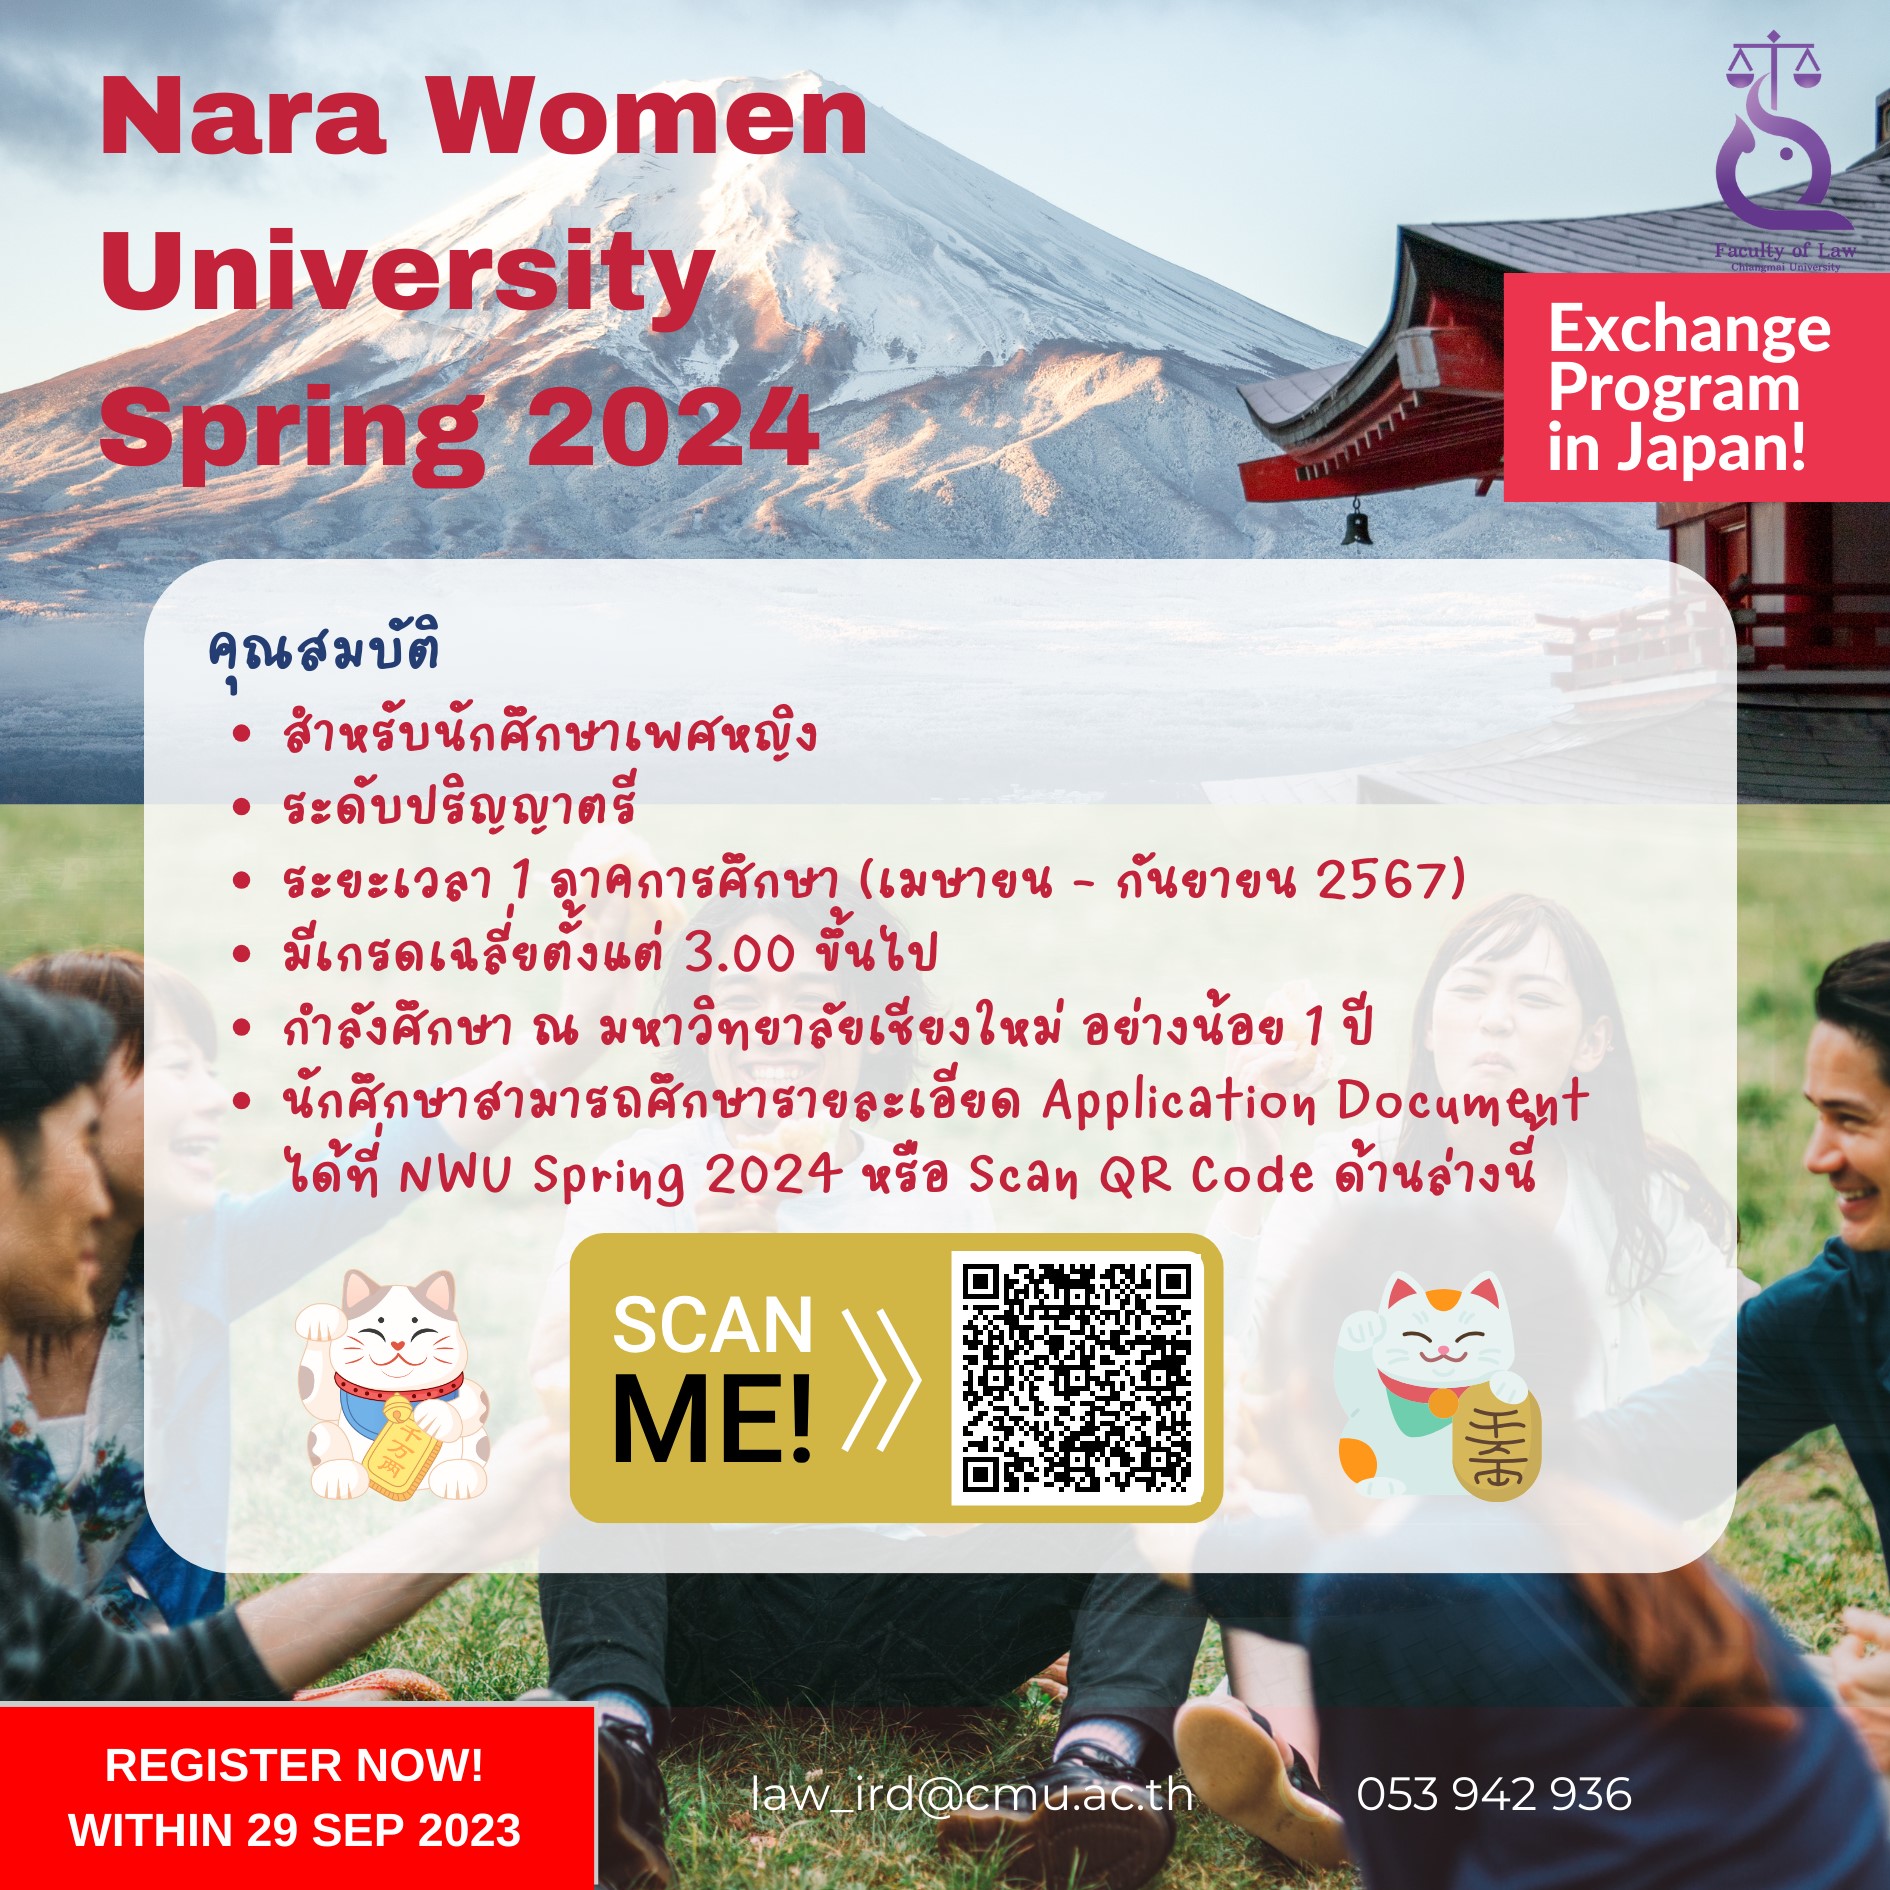 โครงการแลกเปลี่ยน Nara Women University Spring 2024 [หมดเขต 29 กันยายน 66]